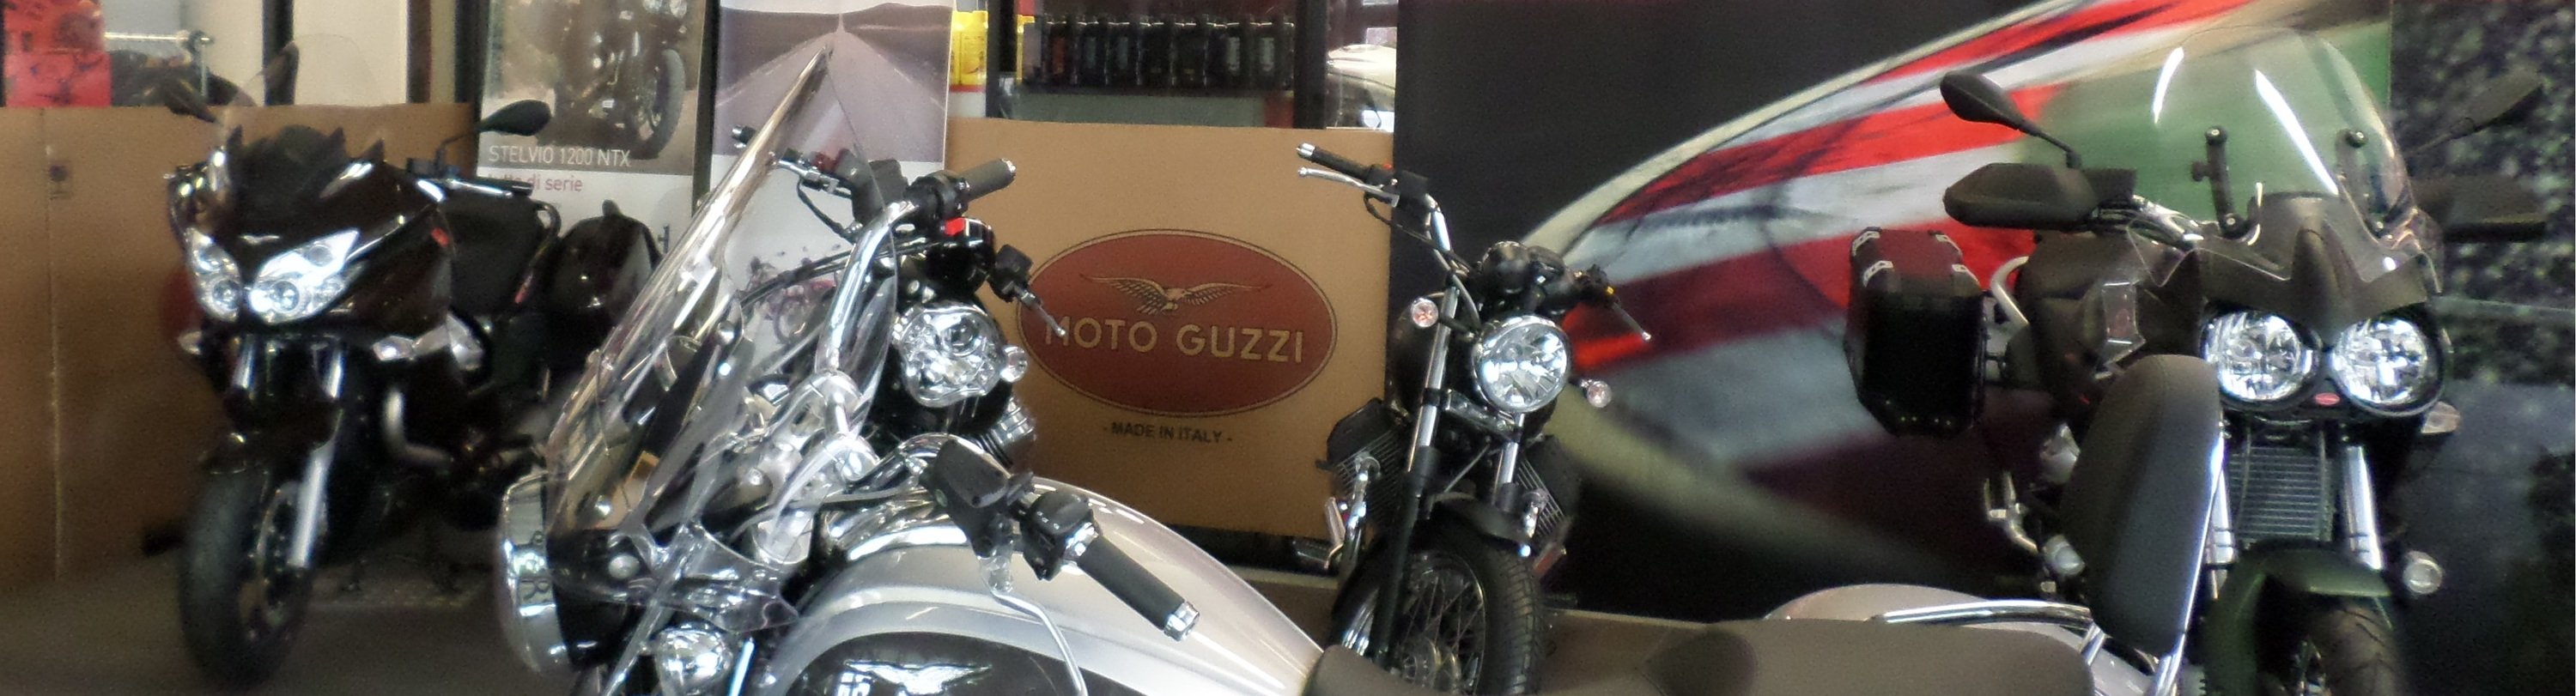 Roby&#039;s garage diventa concessionario ufficiale Moto Guzzi